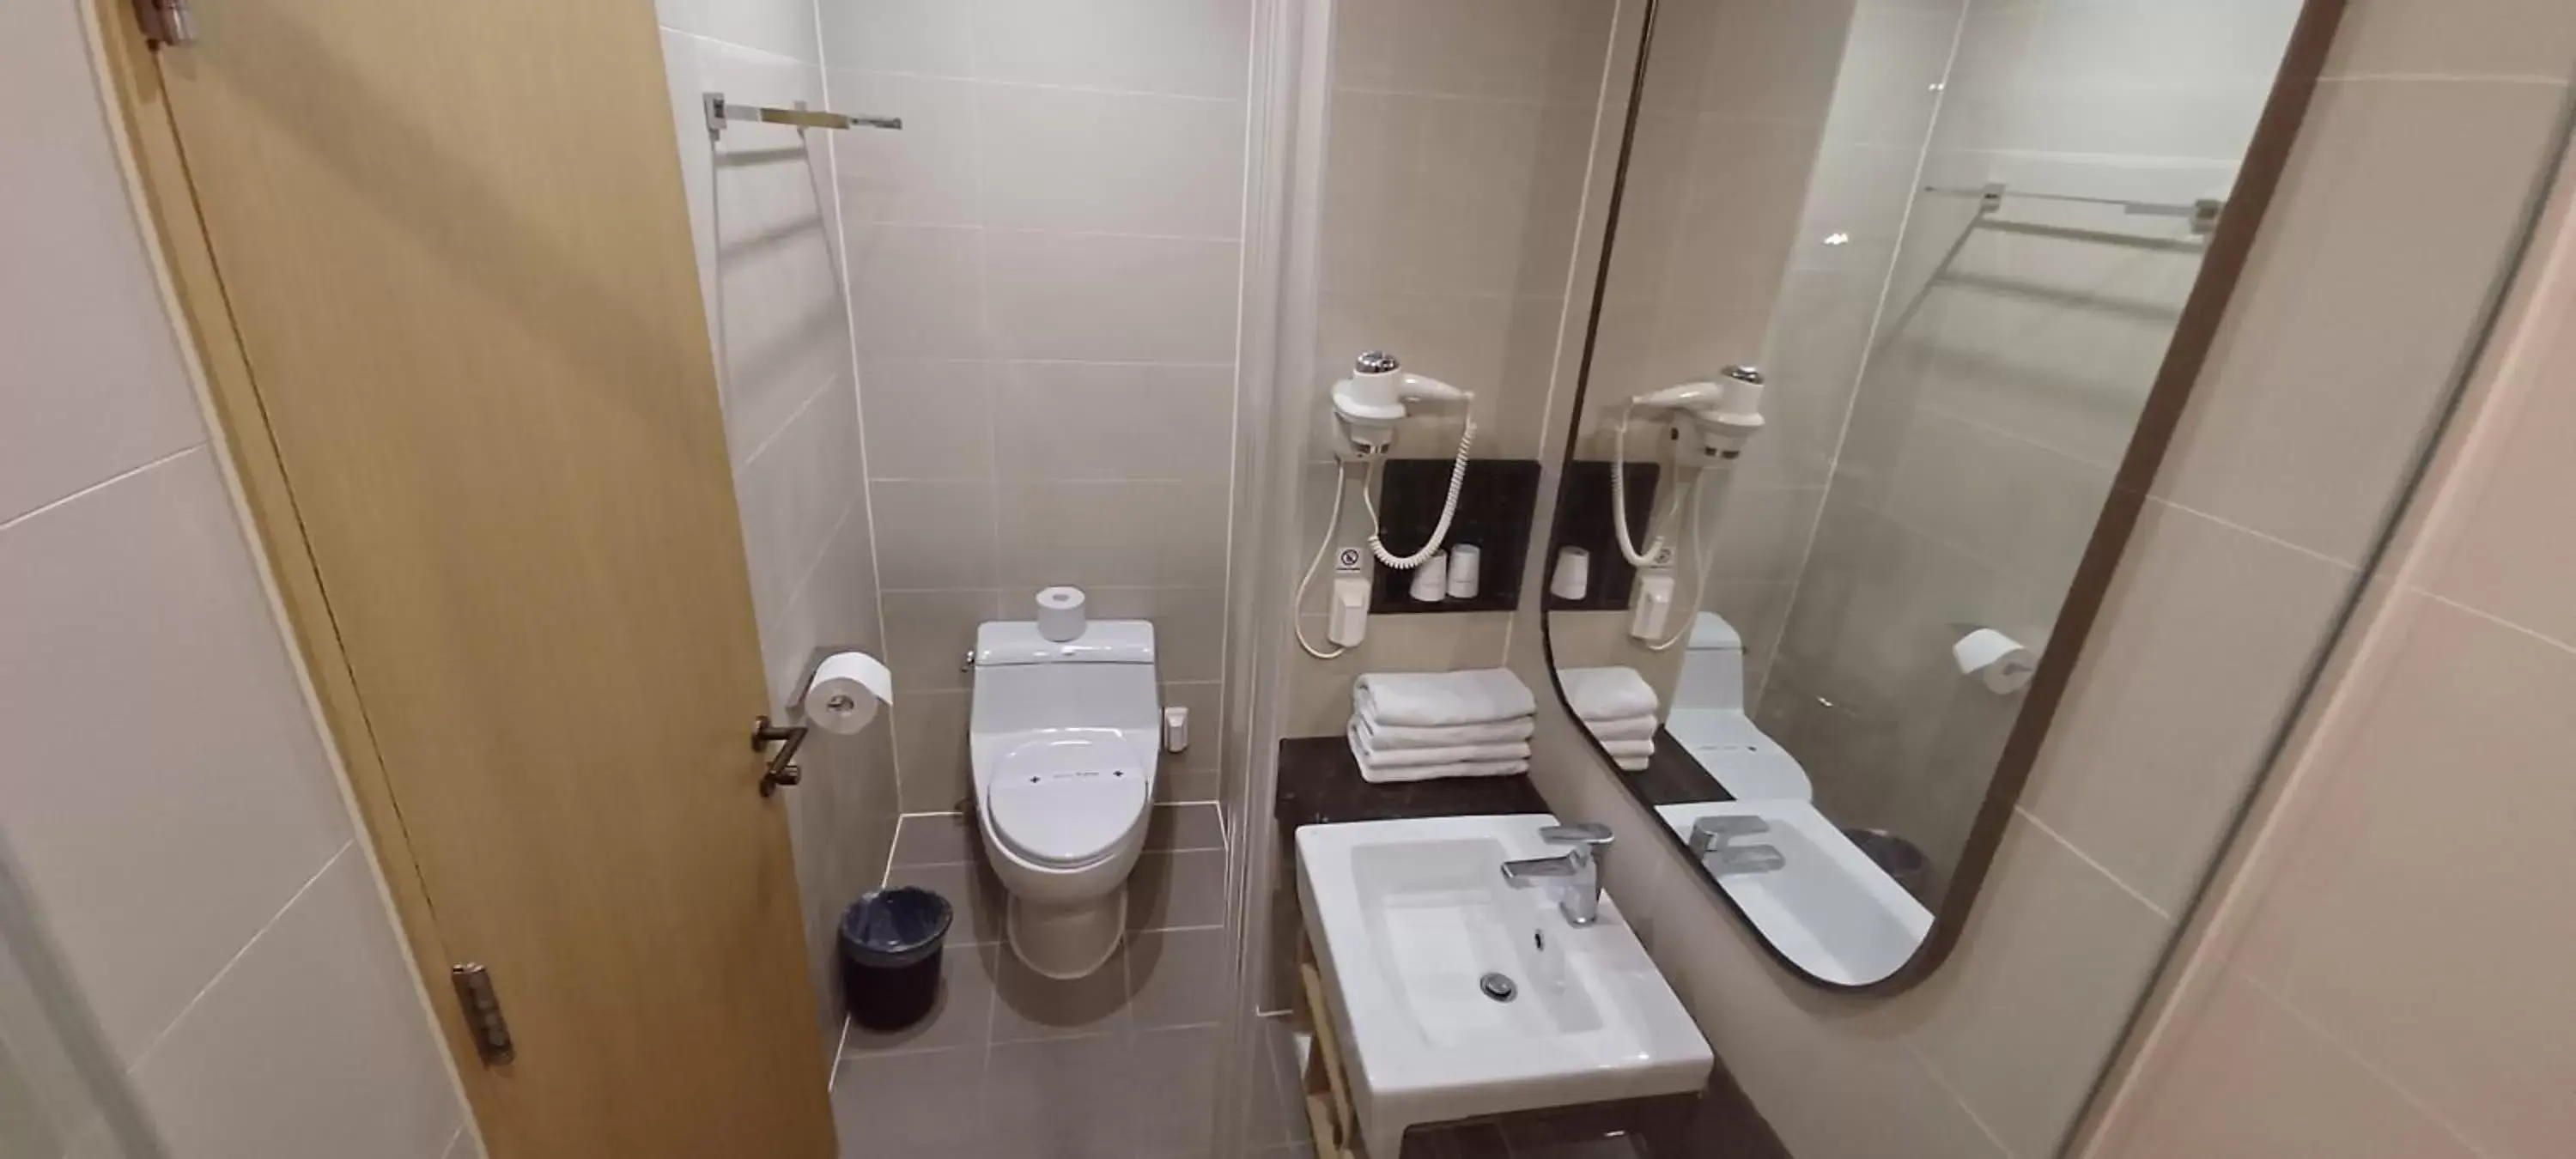 Bathroom in Hotel Migliore Seoul